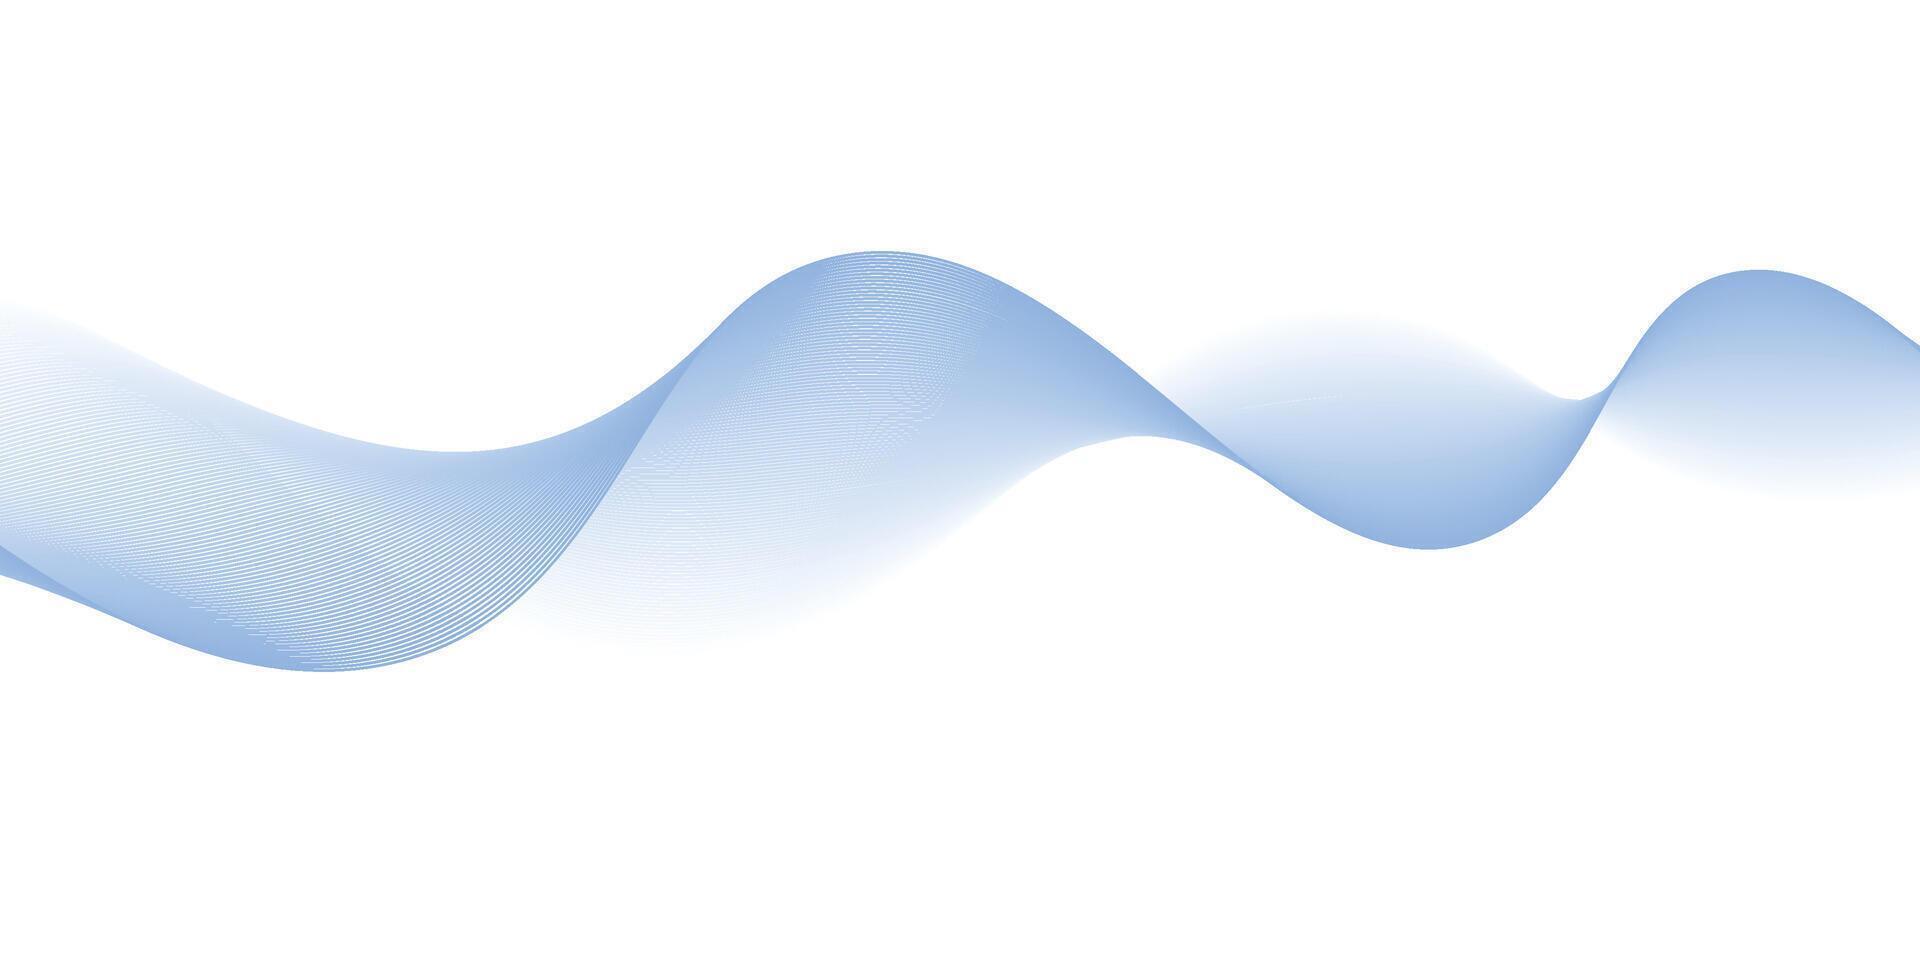 abstrato fundo com azul ondulado e cheio de curvas linhas isolado em transparente fundo vetor